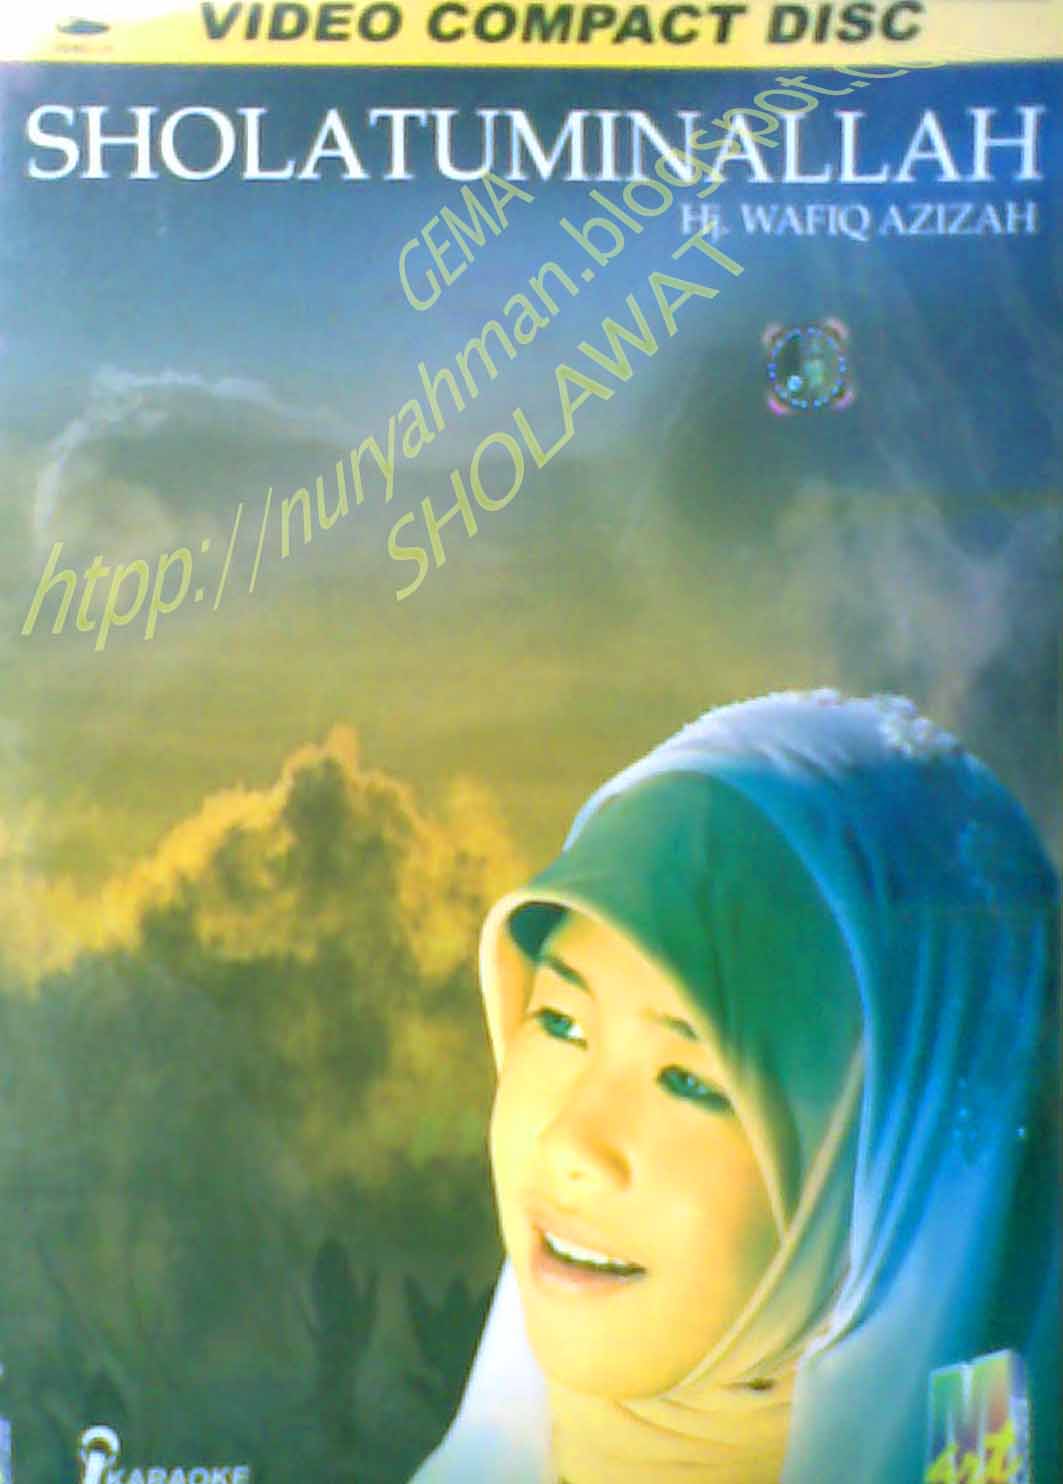 Album Sholatuminallah Wafiq Azizah vol. 2